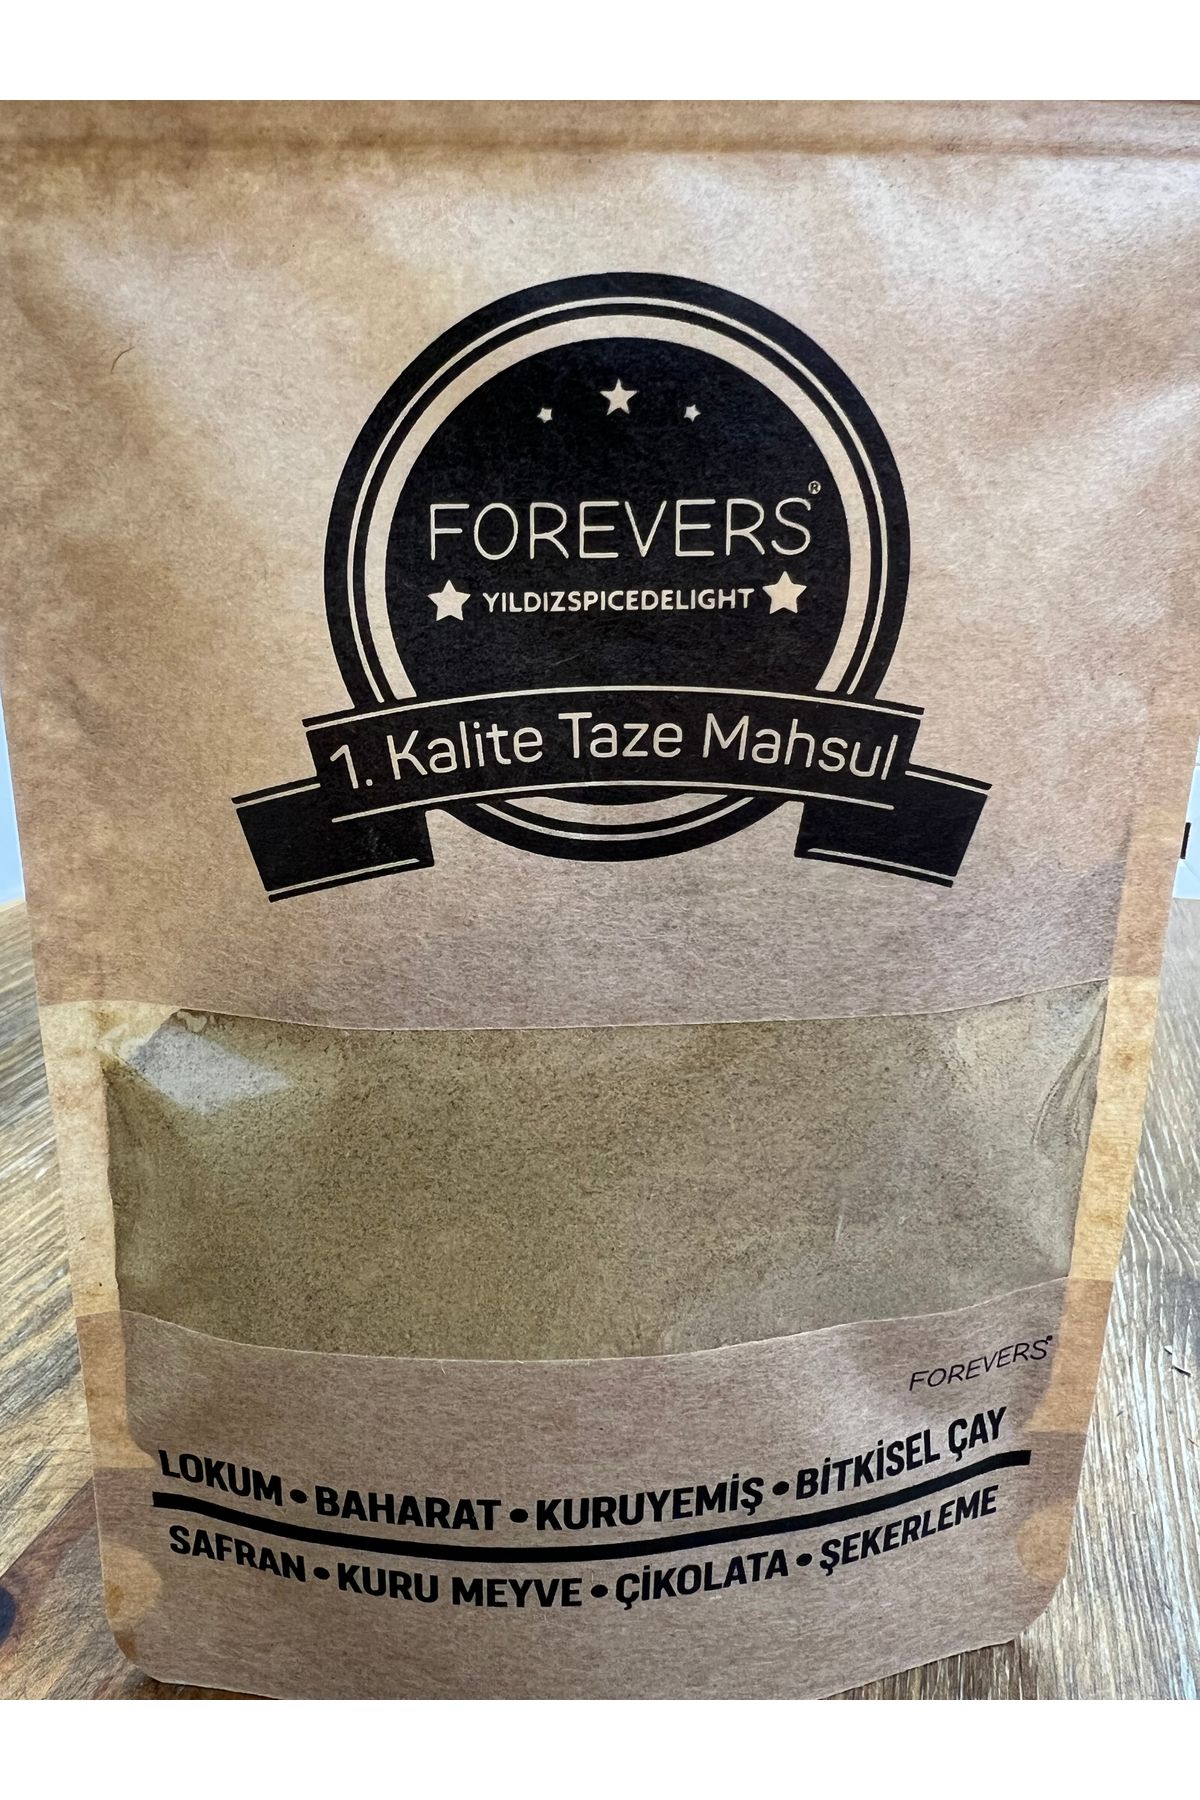 forevers Kara Halile Tozu (1.Kalite & Taze Mahsul ) 185 Gram